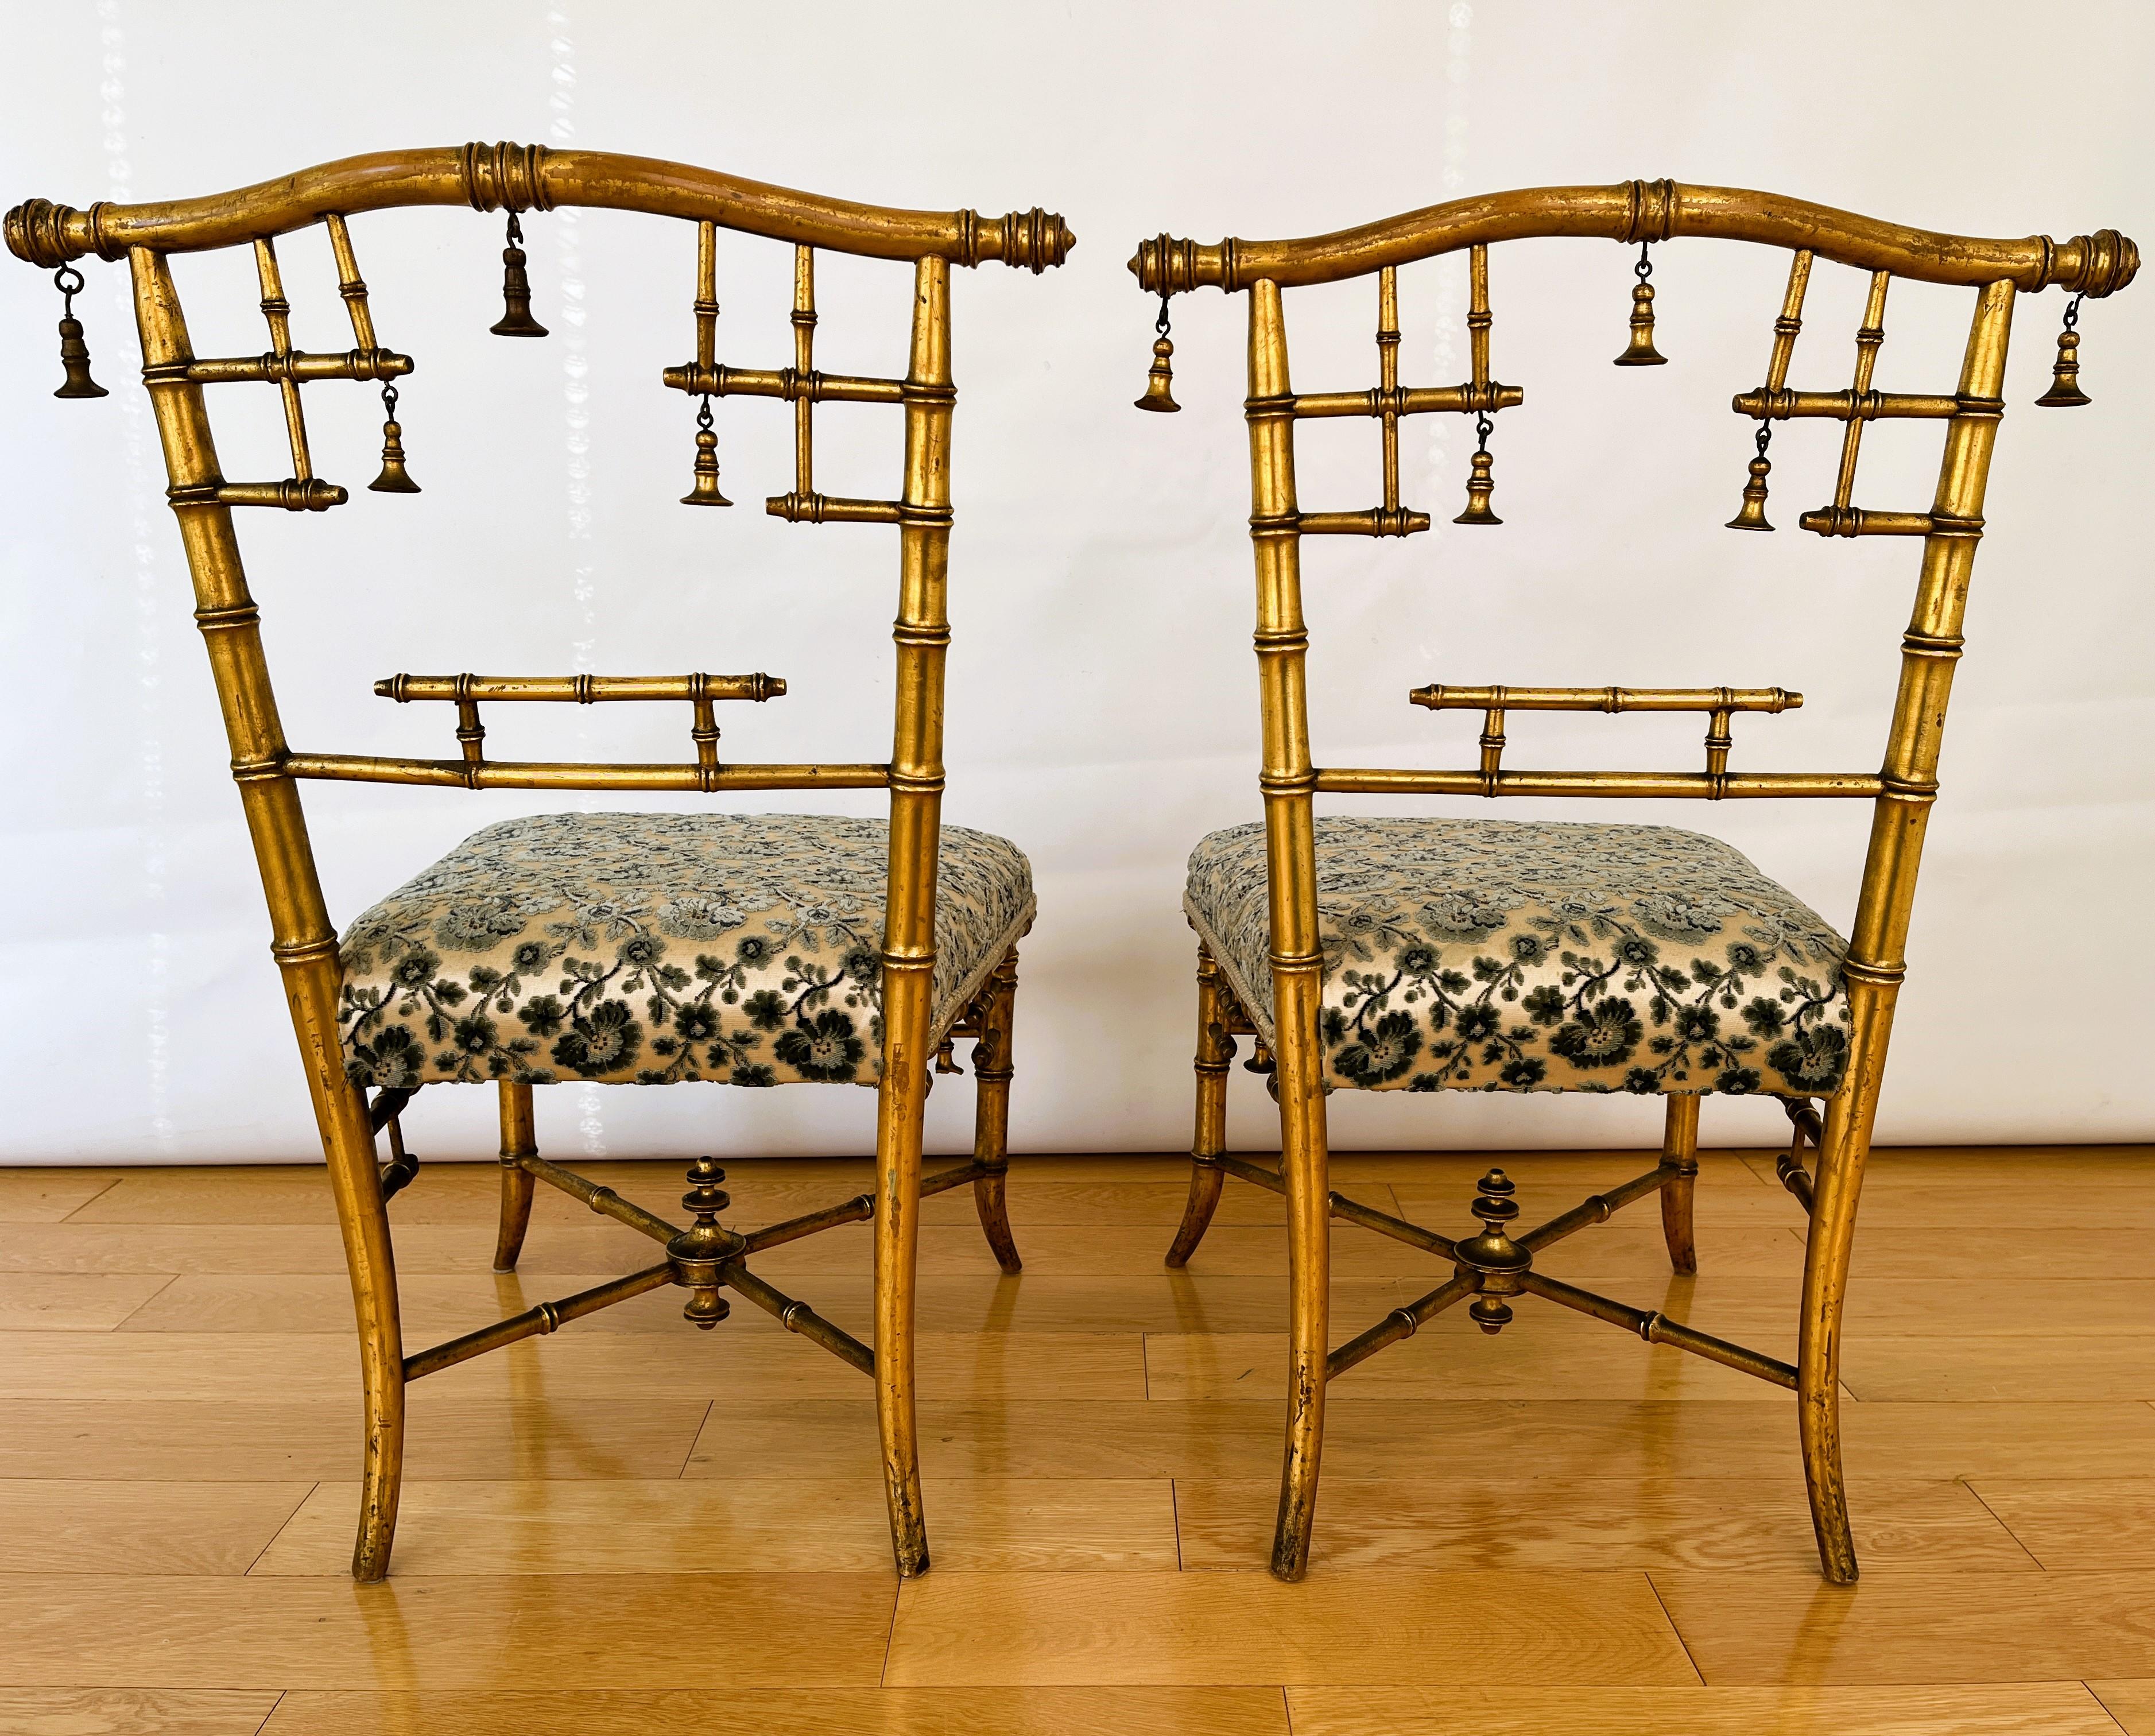 Un rare ensemble vintage de chaises de salon en bois doré avec une tapisserie d'origine en tissu floral en relief. 